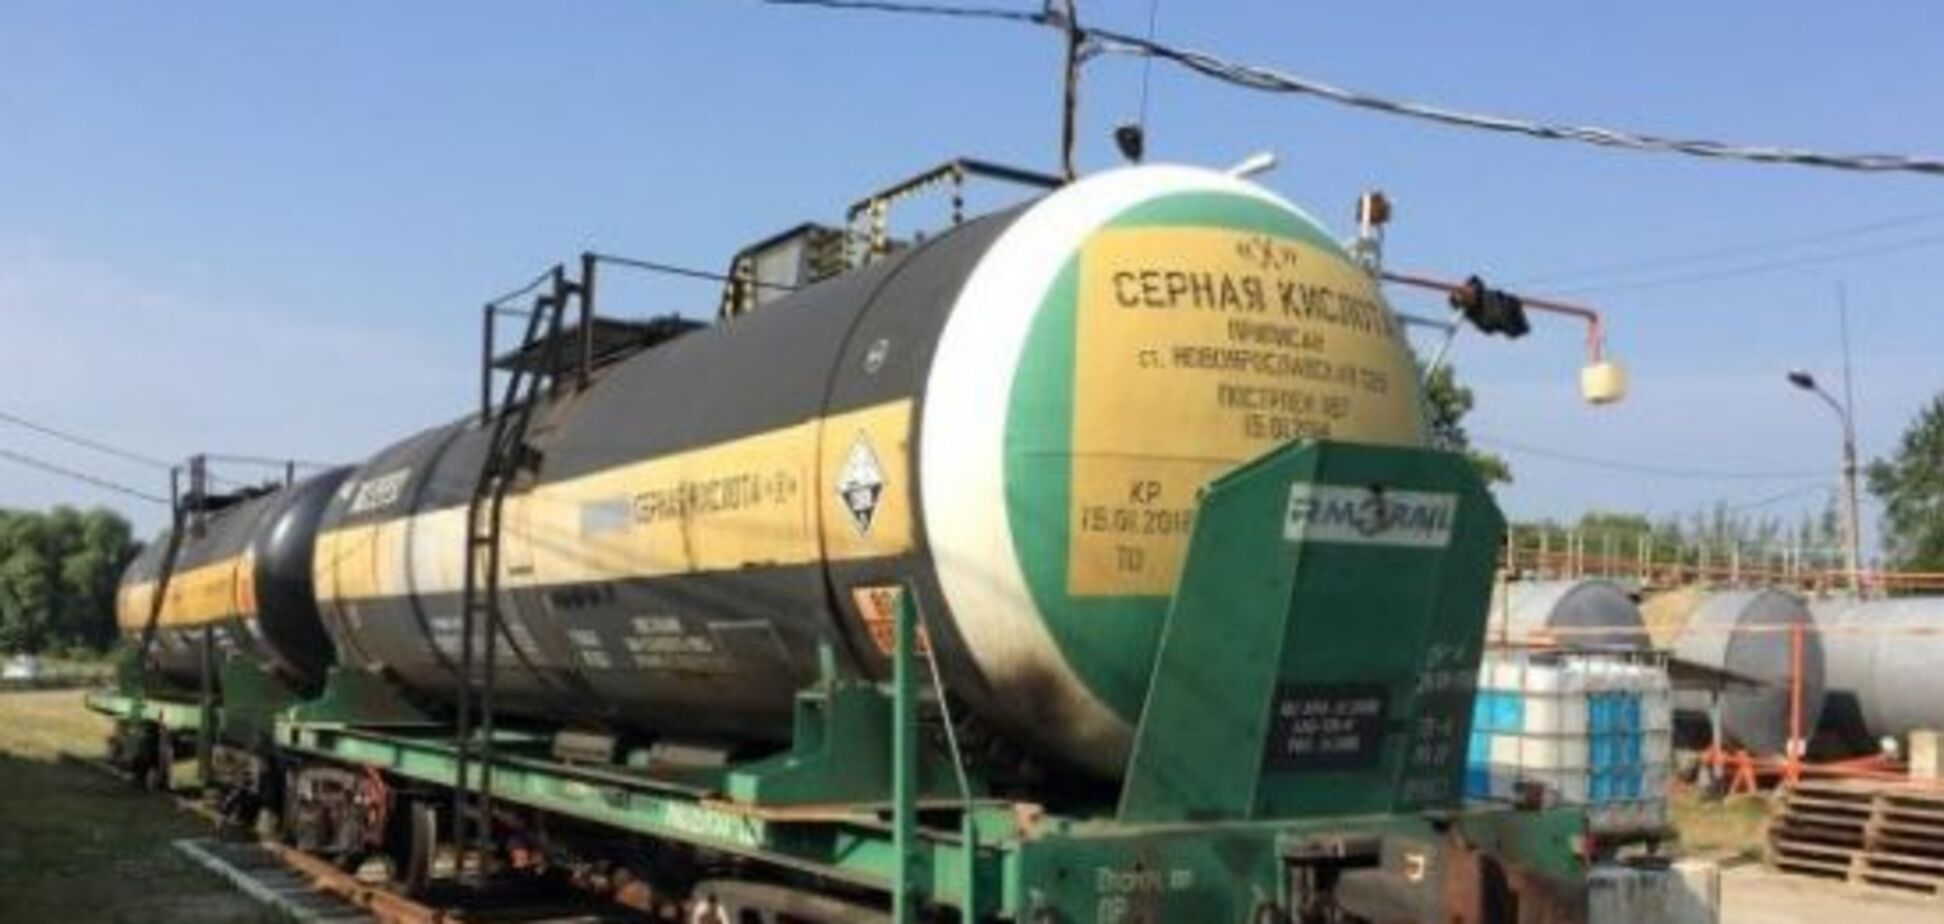 Без серной кислоты производство на меткомбинатах Украины снизится — директор завода